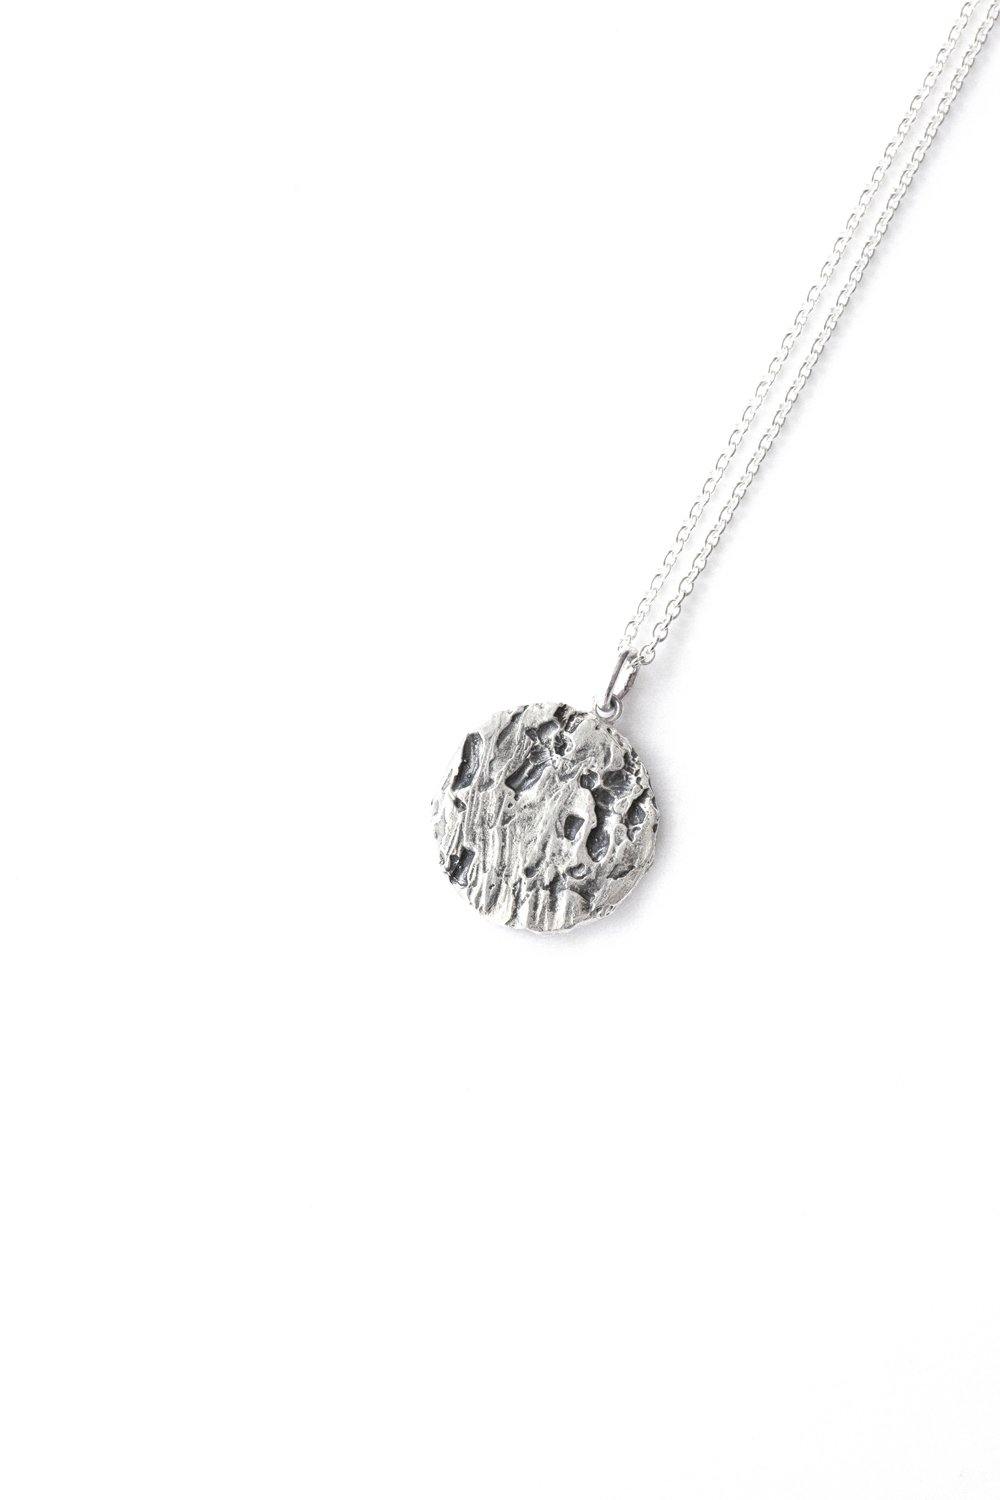 Atelier Hon'ne Revive Necklace - Silver